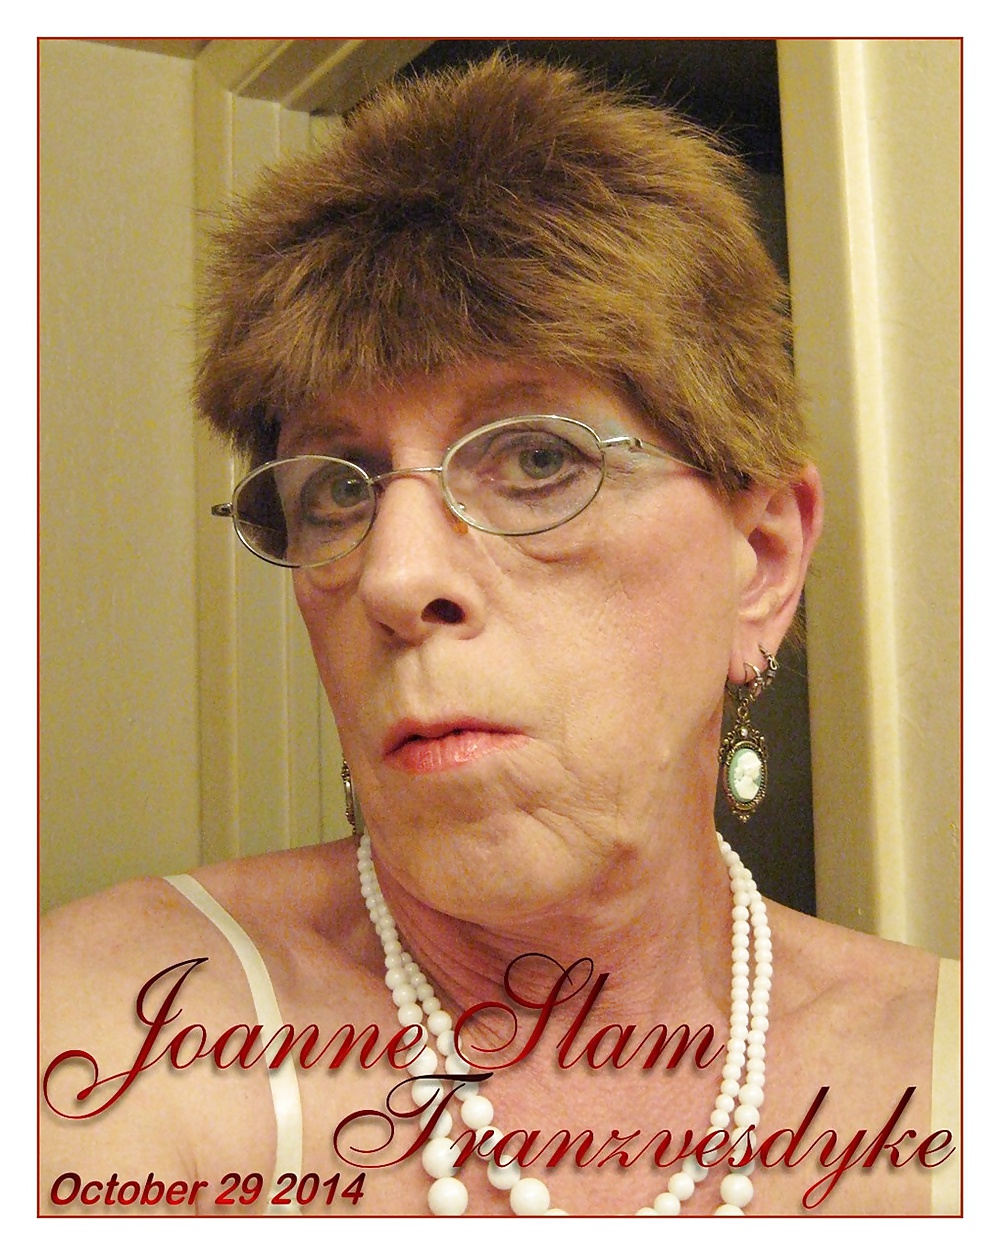 Joanne slam - tranzvesdyke - tomas del 29 de octubre de 2014
 #31898757